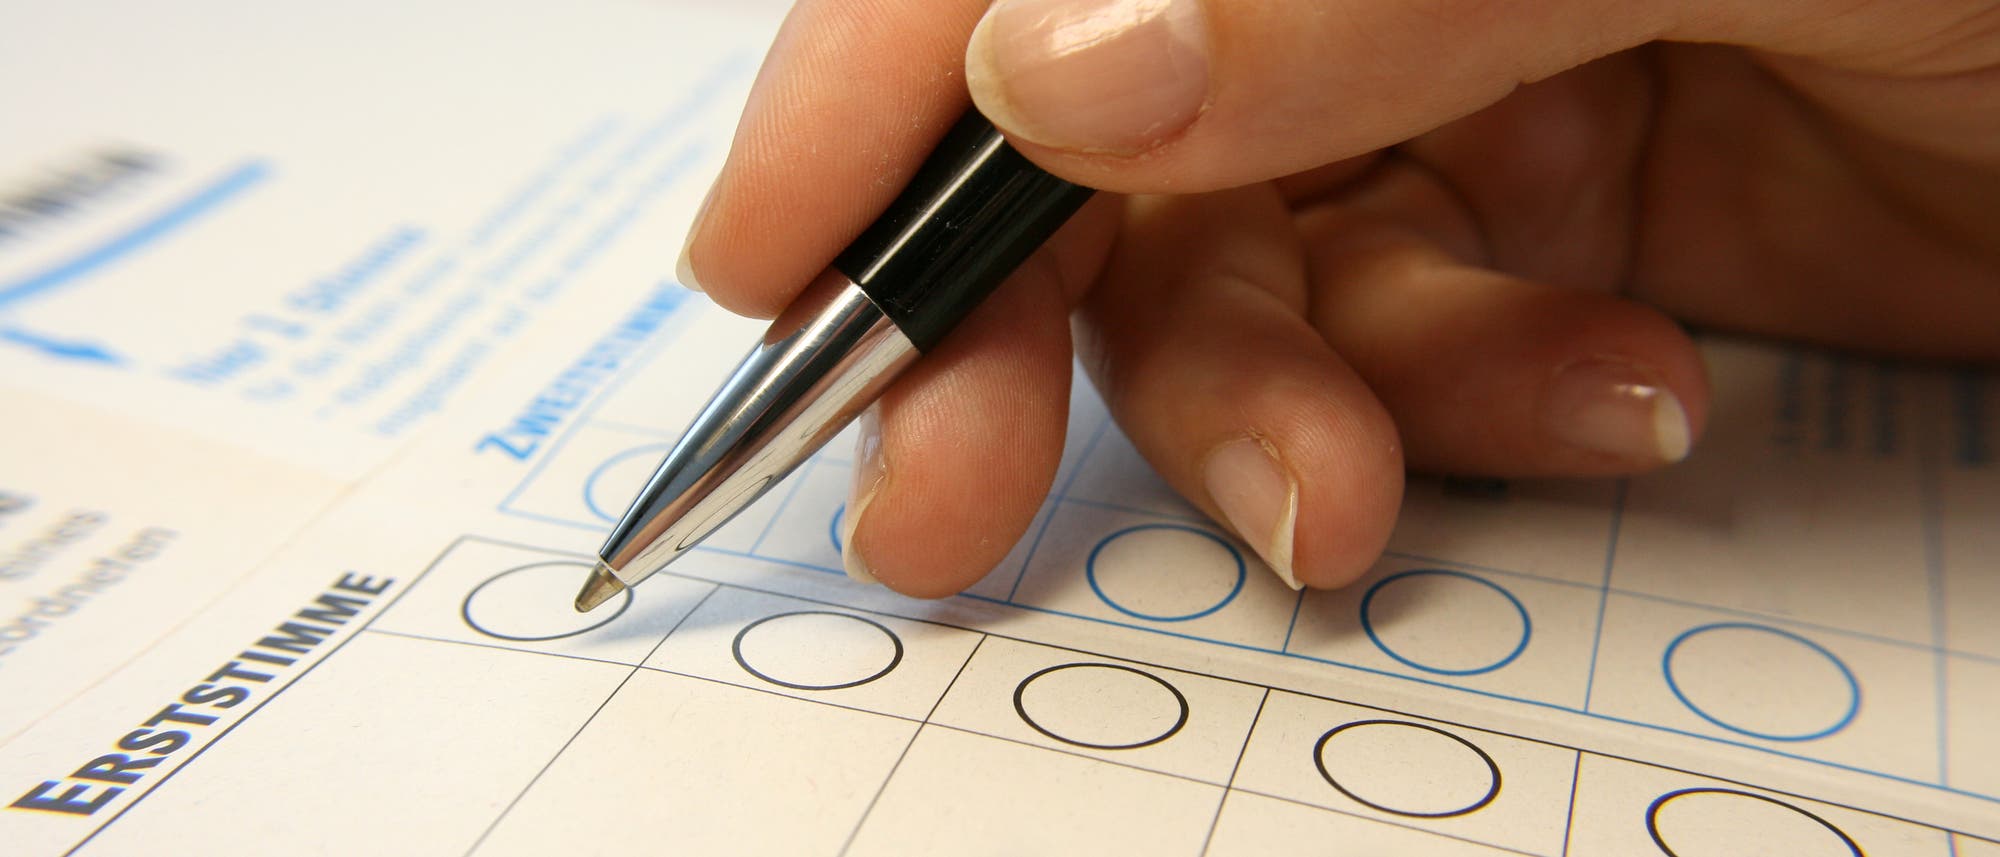 Eine Hand mit Stift kreuzt auf einem Wahlzettel für die Bundestagswahl ein Feld an.